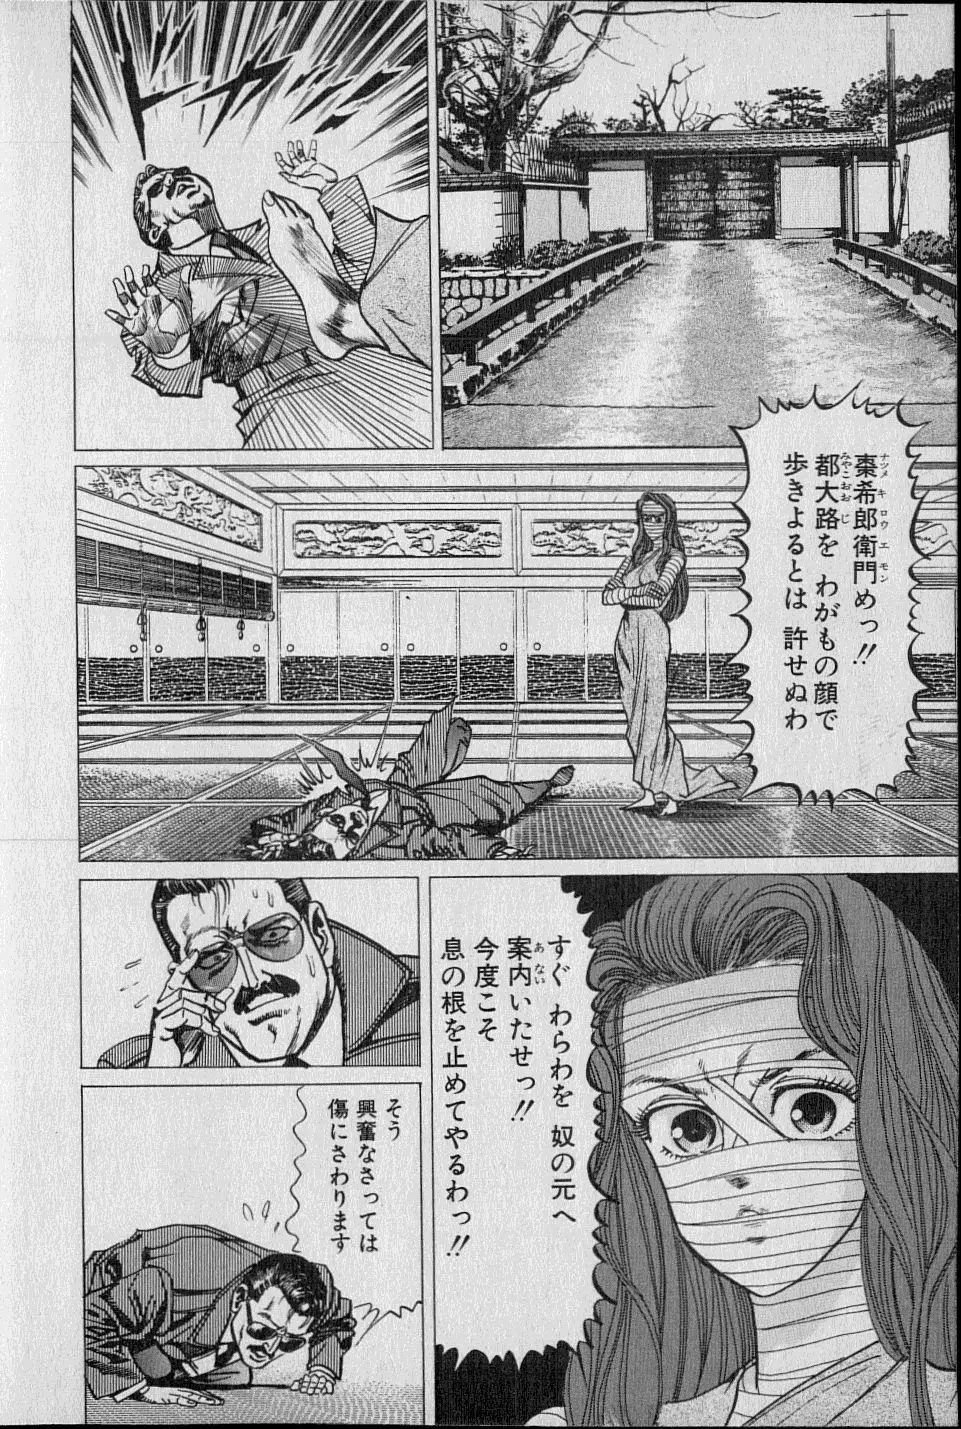 Kouryuu no Mimi Volume 02 13ページ